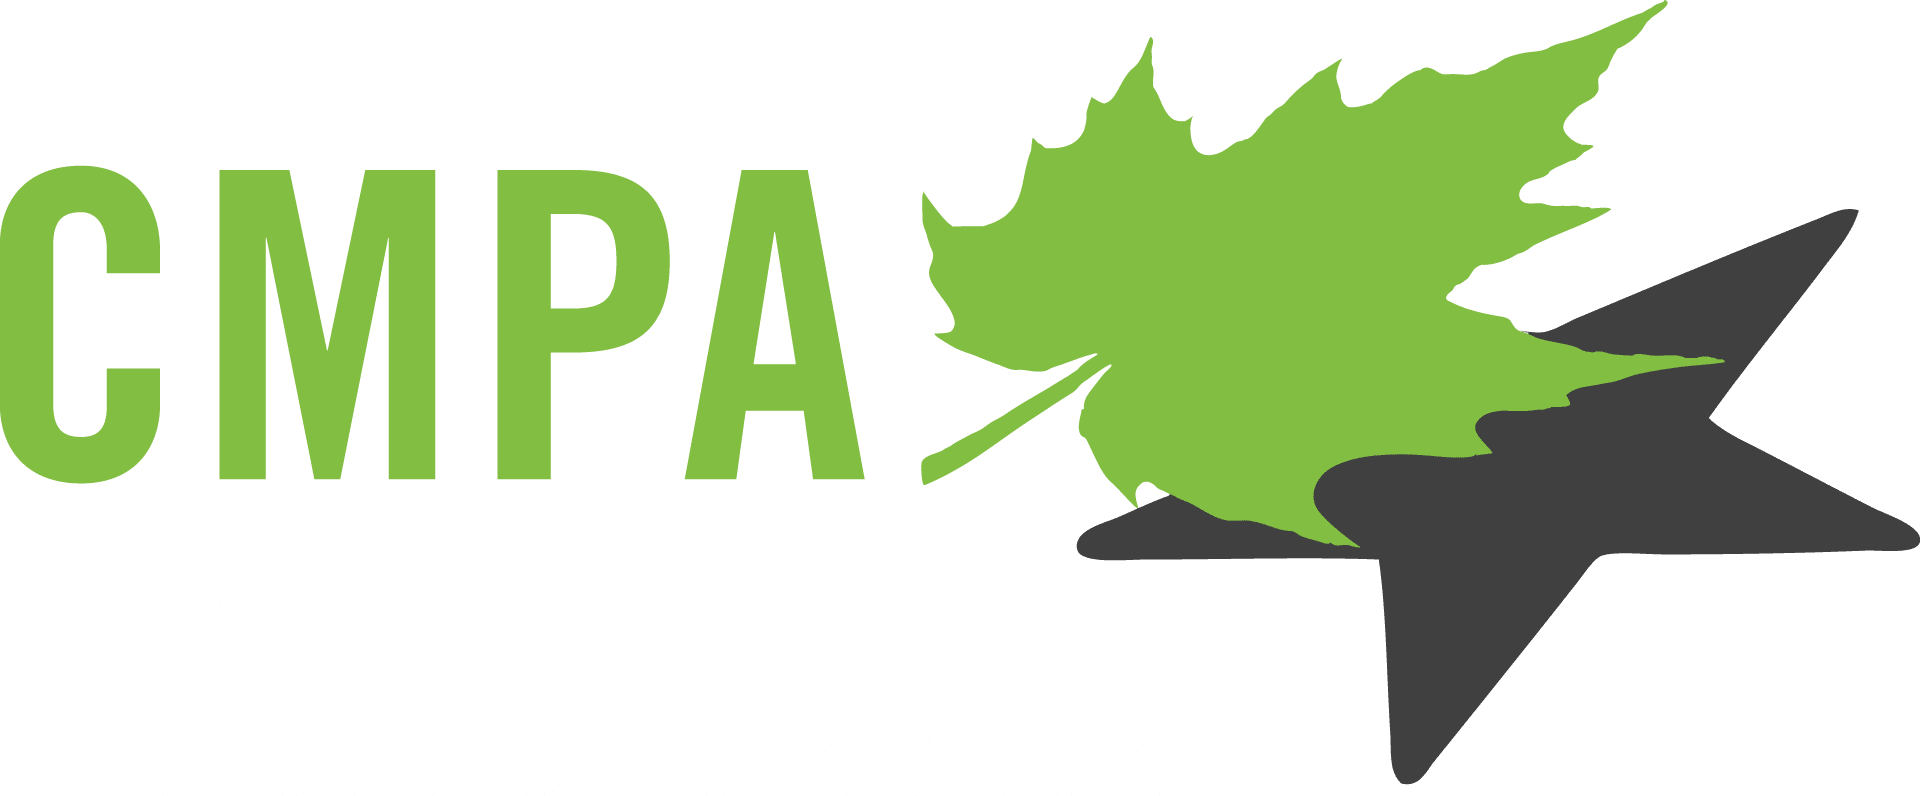 CMPA_logo2015_col_blackbkgr_white